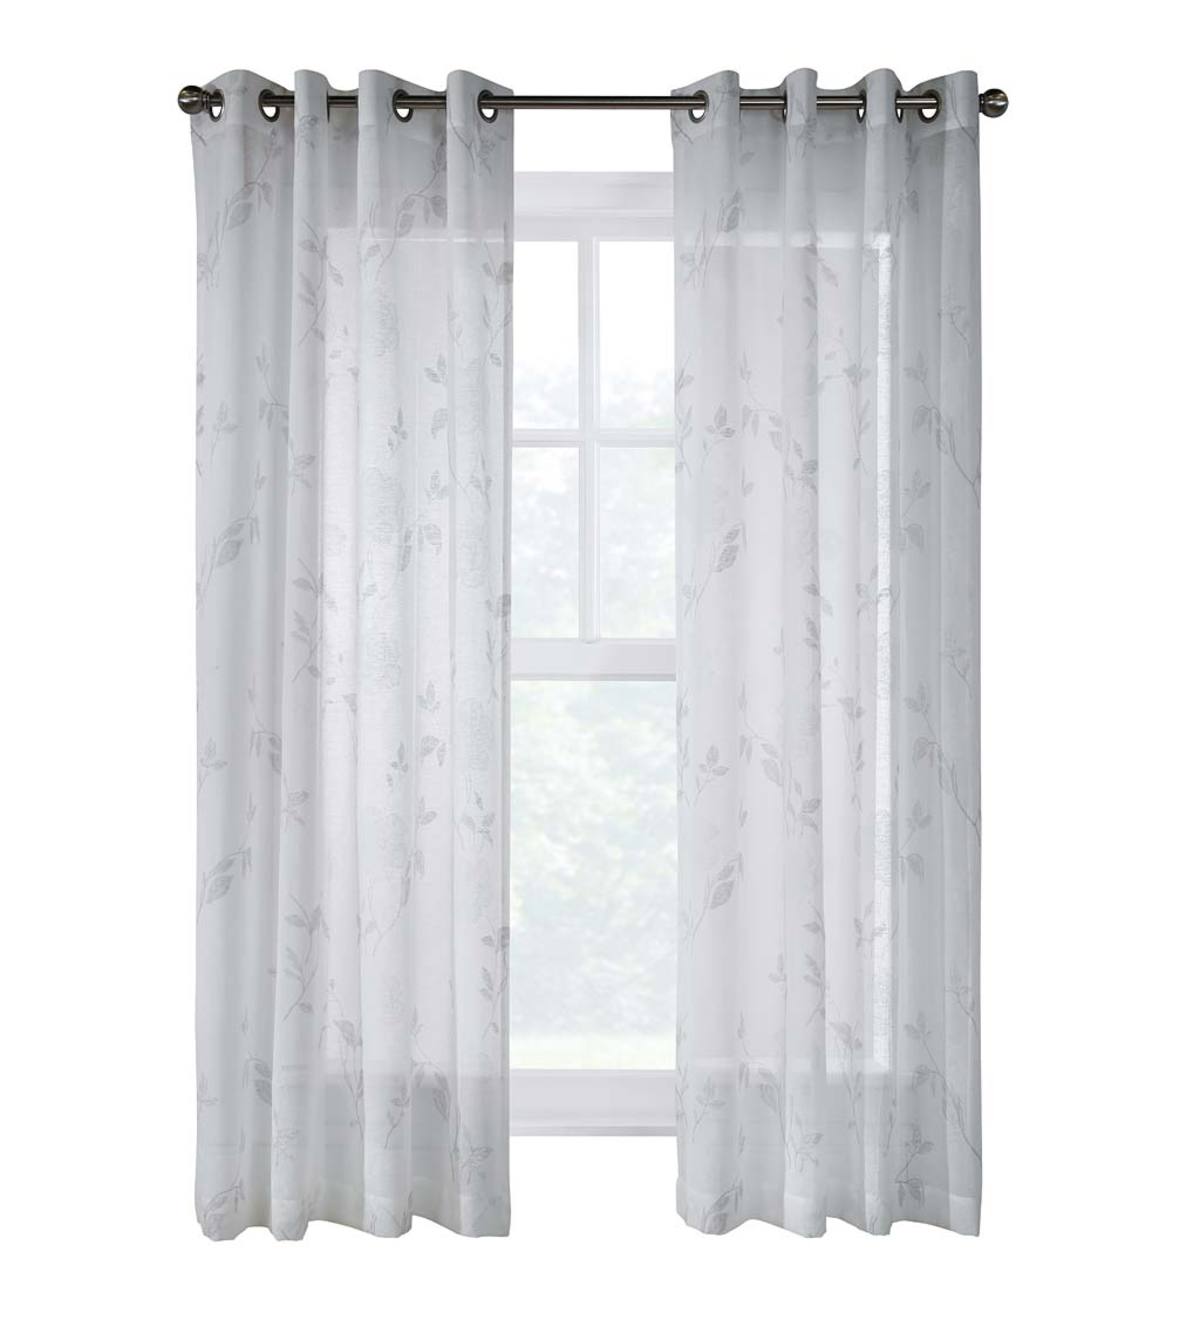 Halifax Grommet Curtain Panel, 52"W x 108"L